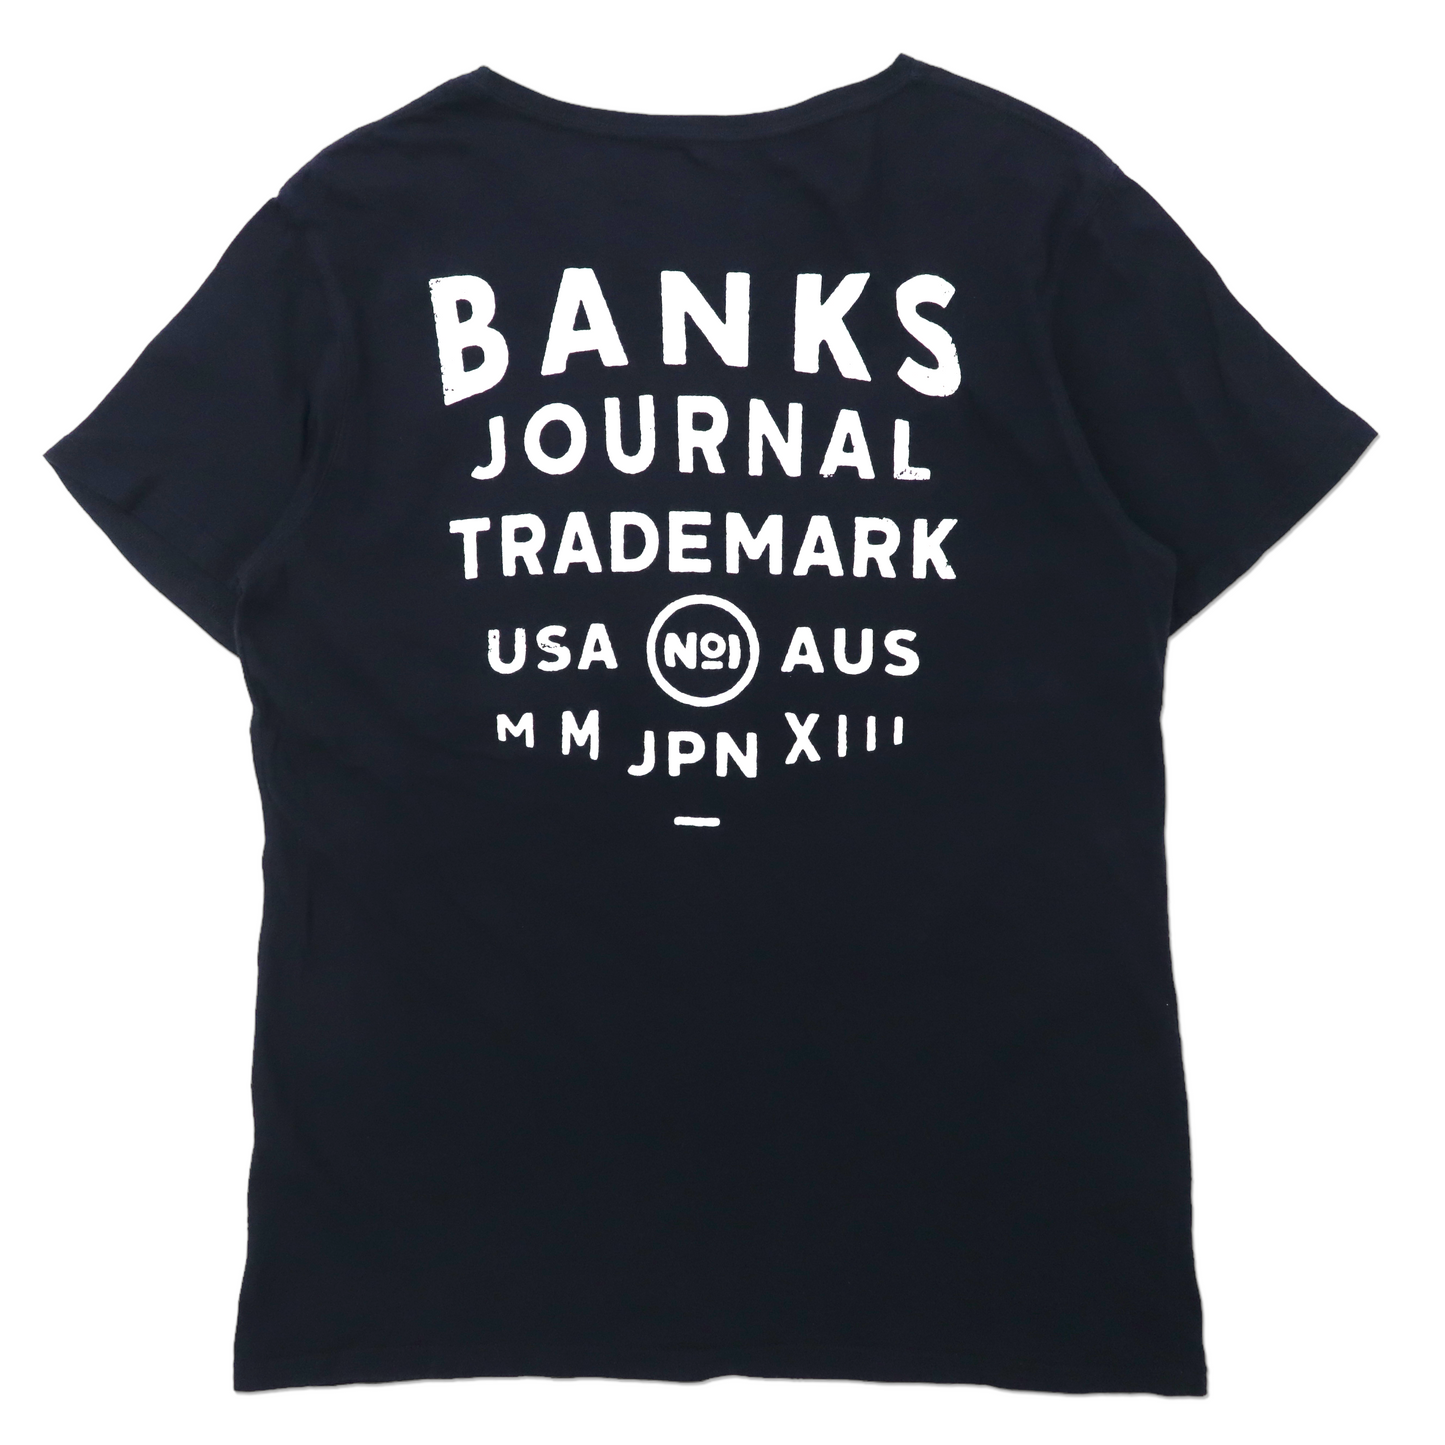 BANKS JOURNAL プリントTシャツ M ブラック コットン ATS0088